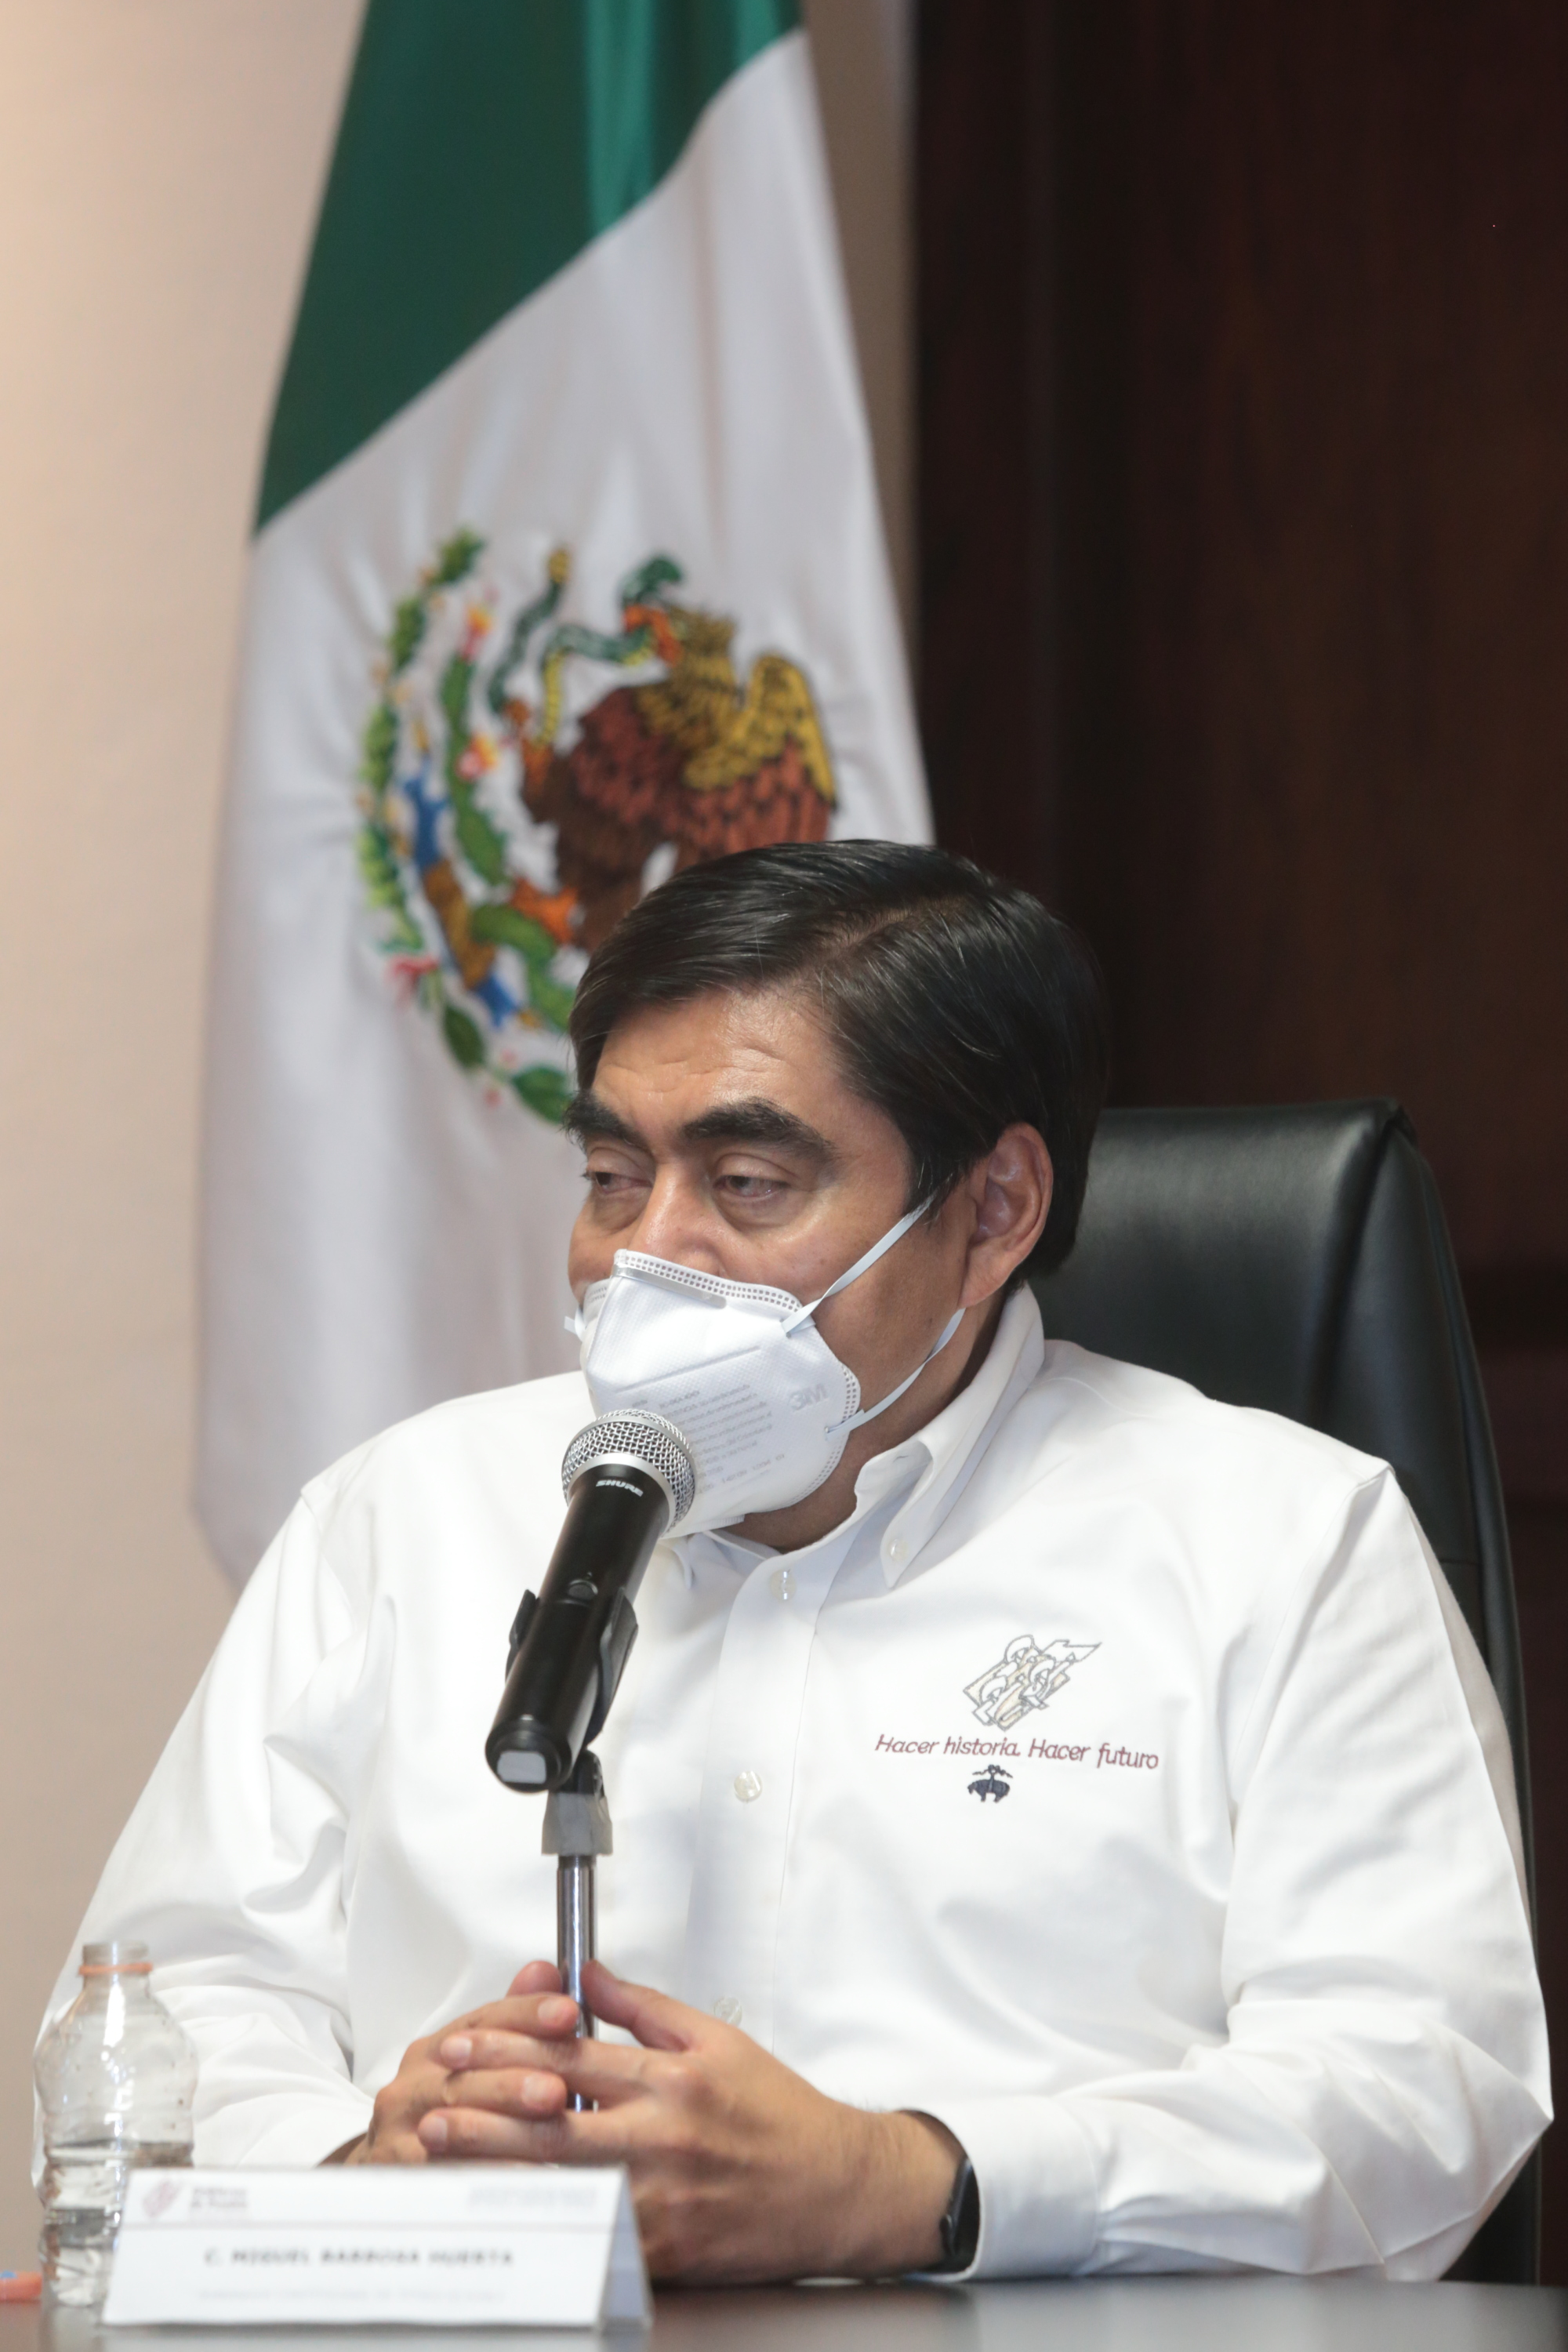 En Puebla no habrá medidas restrictivas que atenten contra los derechos humanos”: Miguel Barbosa Huerta.